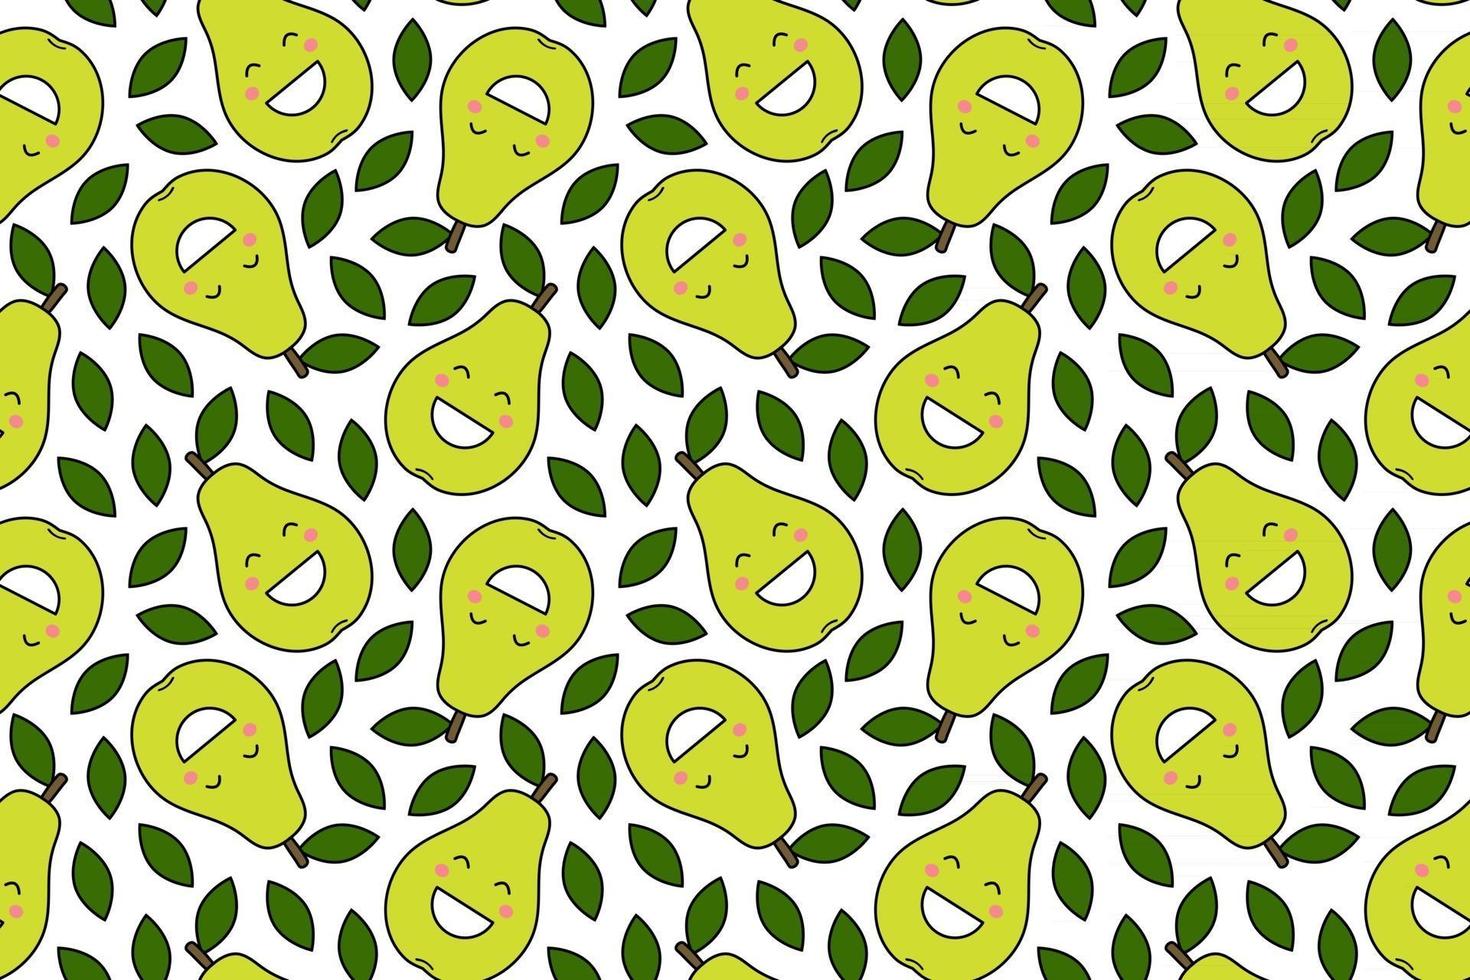 glada kawaii frukter utskrifter för barn söta sömlösa mönster med smiley päron i tecknad stil vektor